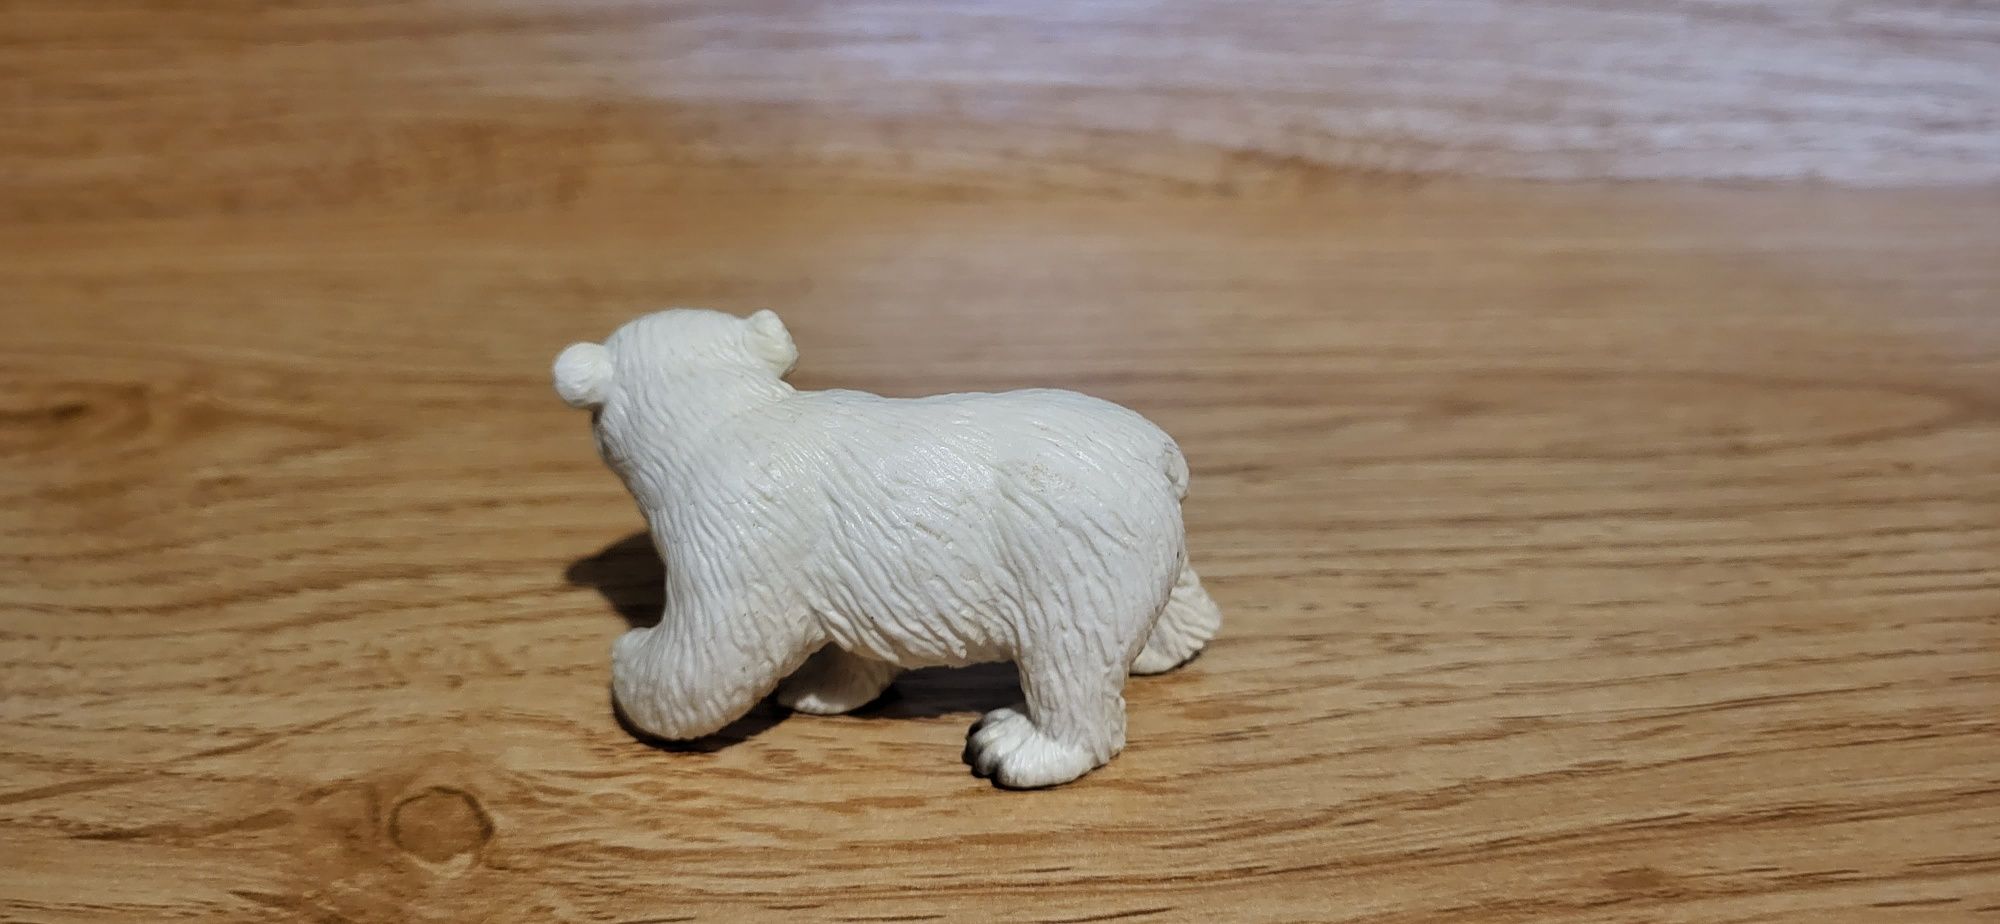 Schleich młody niedźwiedź polarny figurki model wycofany z 2005 r.